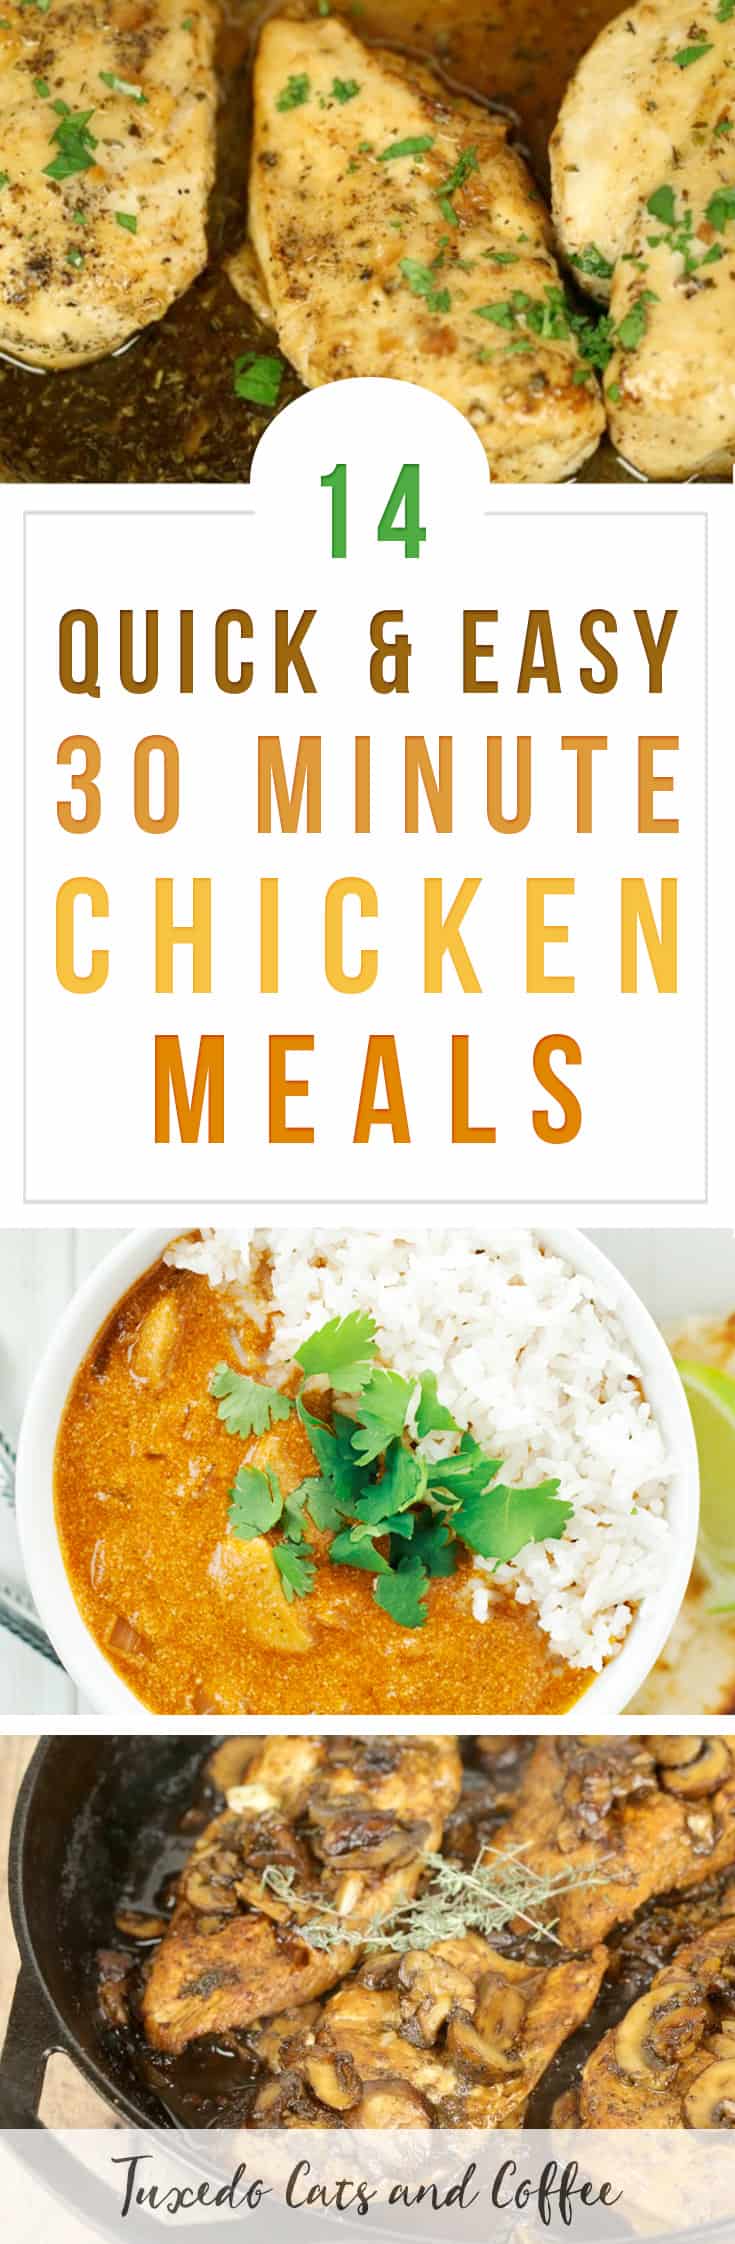 30 Minute Chicken Meals